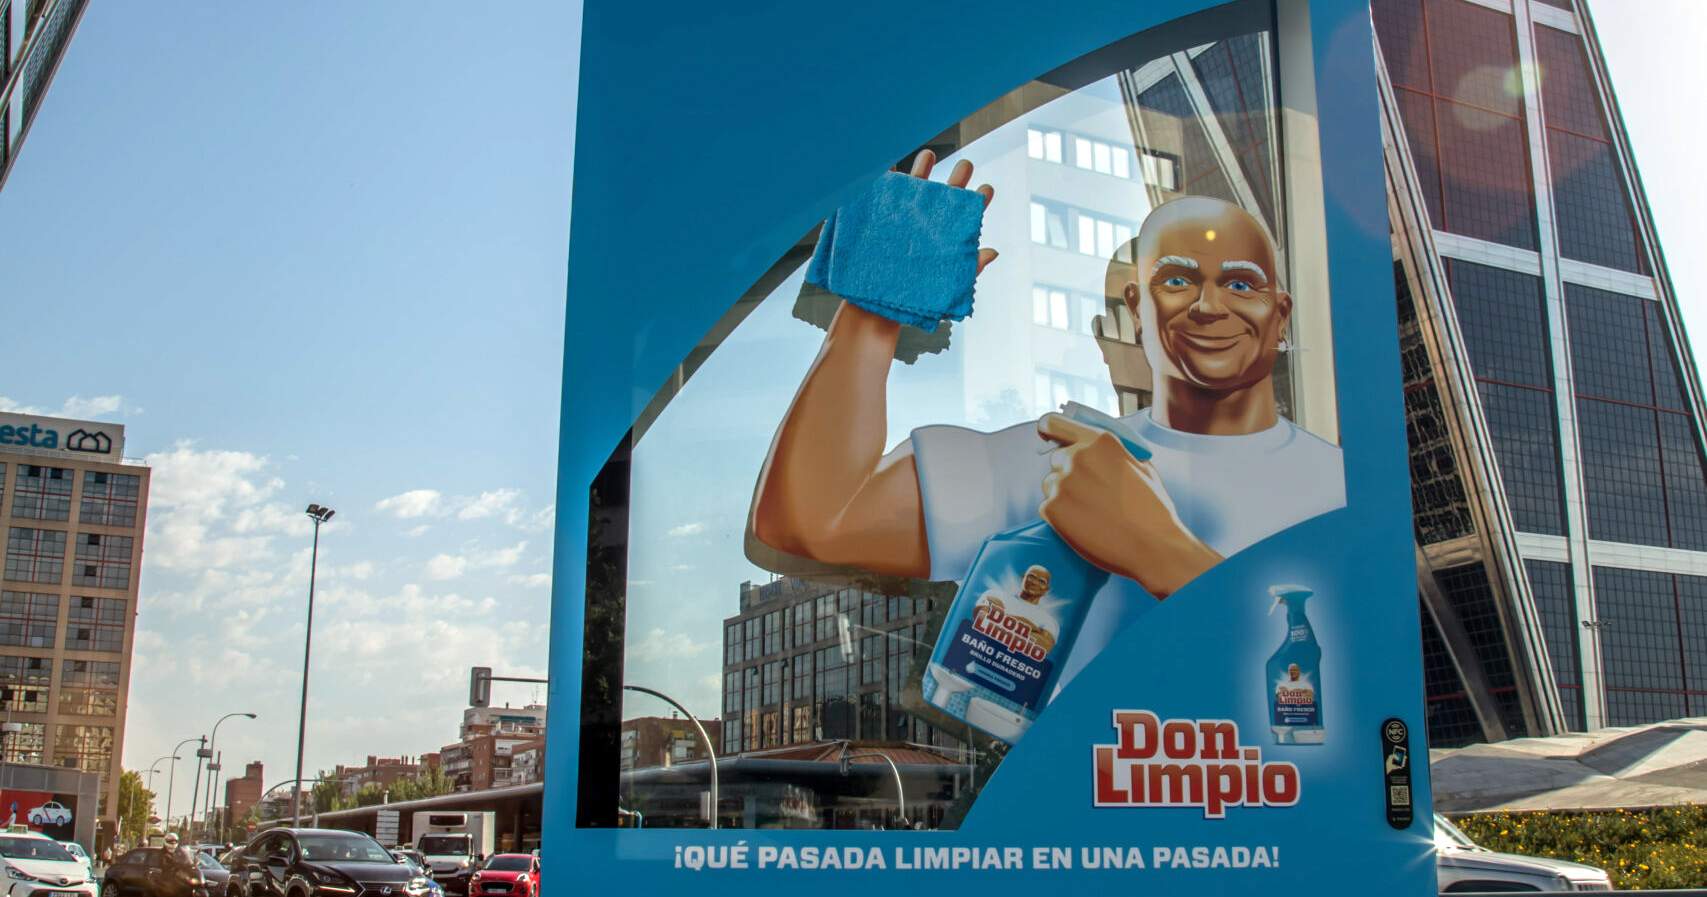 Don Limpio y su campaña de exterior